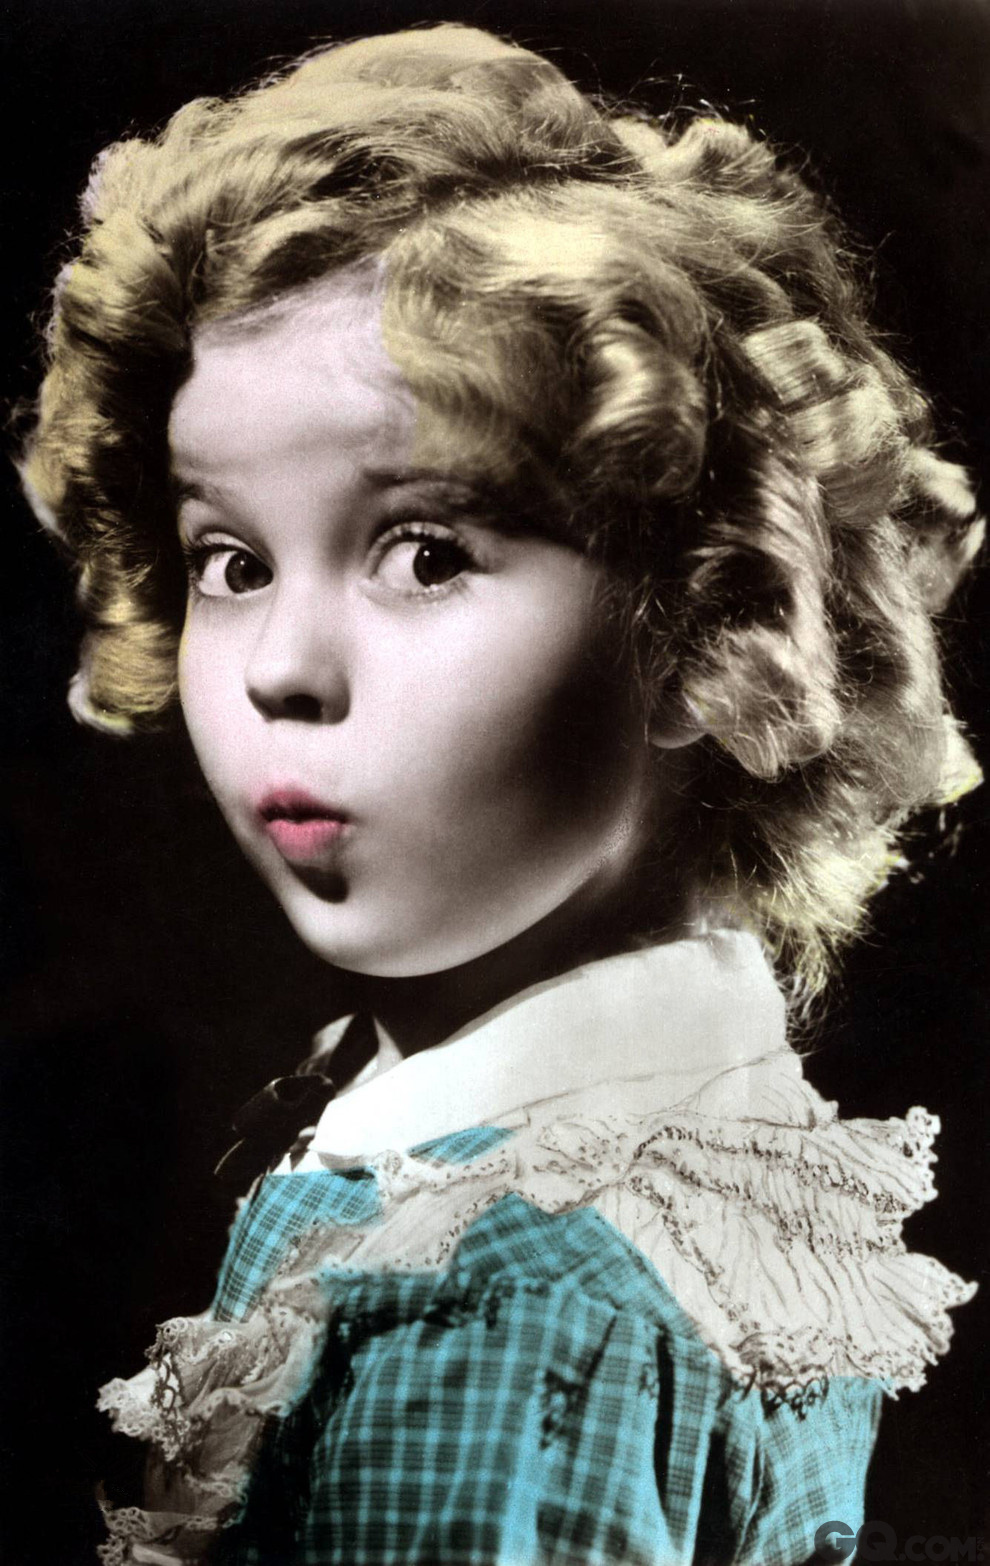 2015年2月10日是秀兰邓波儿逝世一周年的纪念日，忆往昔秀兰邓波儿的音容笑貌依旧在人们的脑海中挥之不去。秀兰·邓波儿儿童时期为美国著名童星之一，3岁时邓波儿在母亲的安排下进入一所叫米格林的幼儿舞蹈学校接受训练，1934年年仅6岁出演了歌舞片《起立欢 呼》，影片大获成功。随后一年中，邓波儿出演了《新群芳大会》、《小安琪》、《小情人》等8部影片。由于在这几部影片的出色表演，1935年年仅7岁的她 就获得了第7届奥斯卡特别金像奖，成为有史以来获得奥斯卡奖的第一个孩子。同年“美国电影科学学会”还授于她“1934年最杰出个人”称号。她每年都在最受欢迎的十大明星之列，成为当时美国儿童崇拜的偶像，也是成年人心目中的宠儿，曾有“大众小情人”之称，下面我们来回顾一下这位著名童星秀兰·邓波儿生前的经典荧屏形象，祭奠这位人们心中永远的天使。